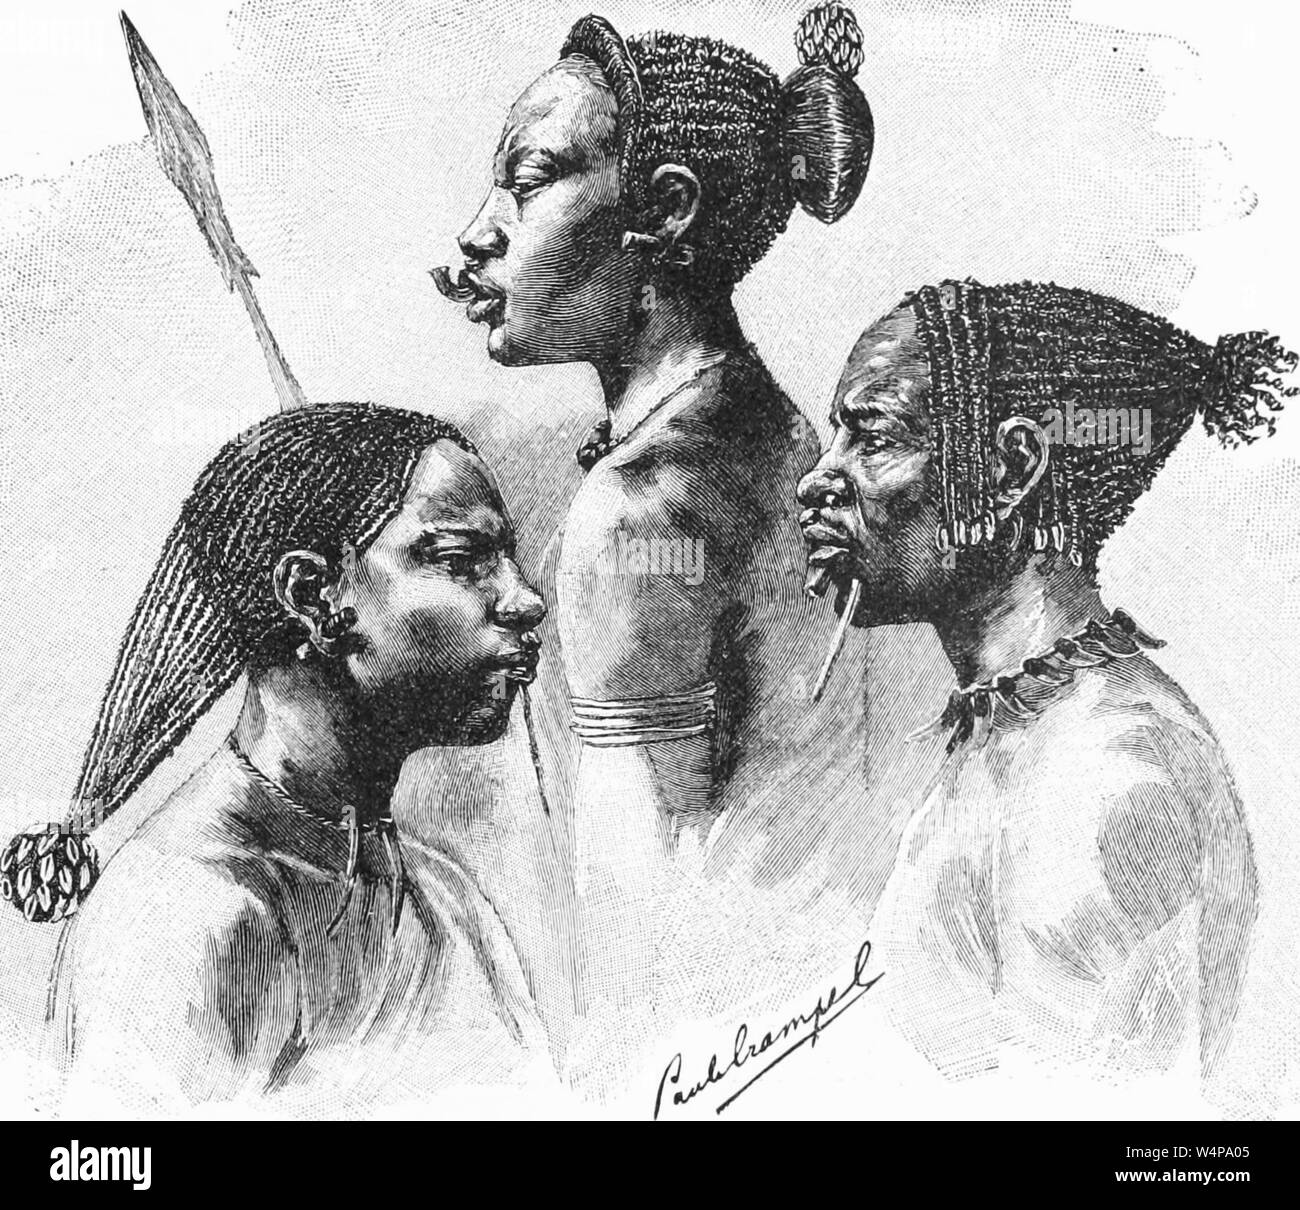 Eingravierte Zeichnung des Langonassi sudanesischen Stamm, aus dem Buch "ridpath Universal's Geschichte" von John Clark Ridpath, 1897. Mit freundlicher Genehmigung Internet Archive. () Stockfoto